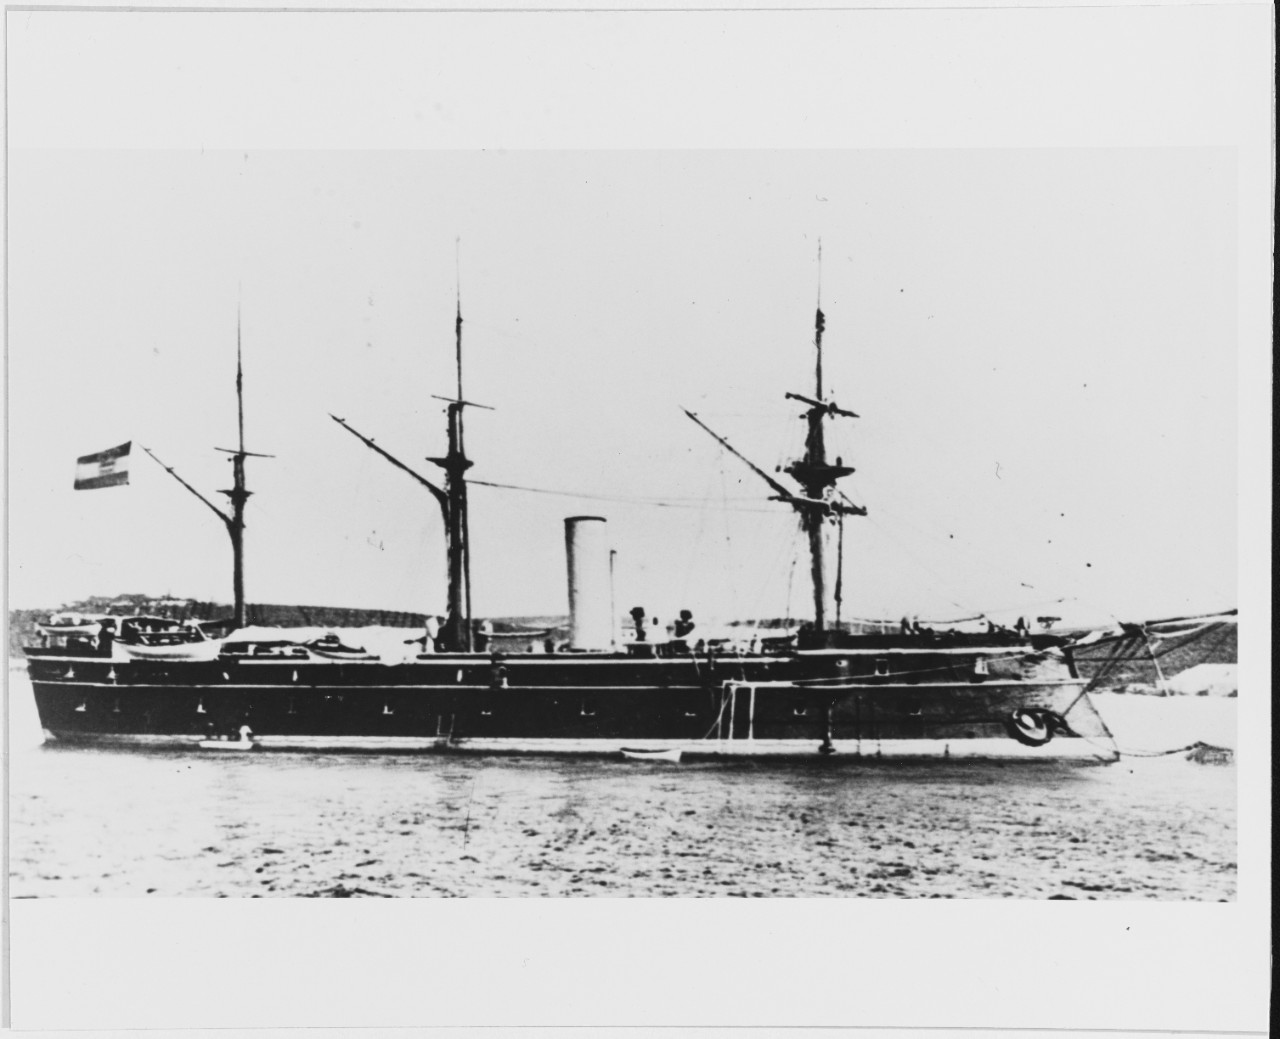 ERZHERZOG FERDINAND MAX (Austrian battleship, 1865-1916)